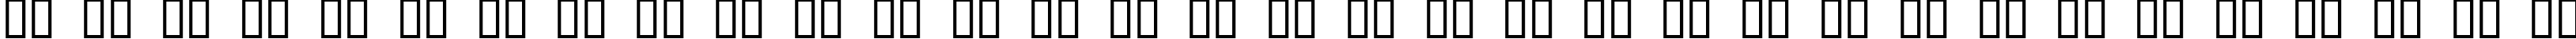 Пример написания русского алфавита шрифтом CanGoods